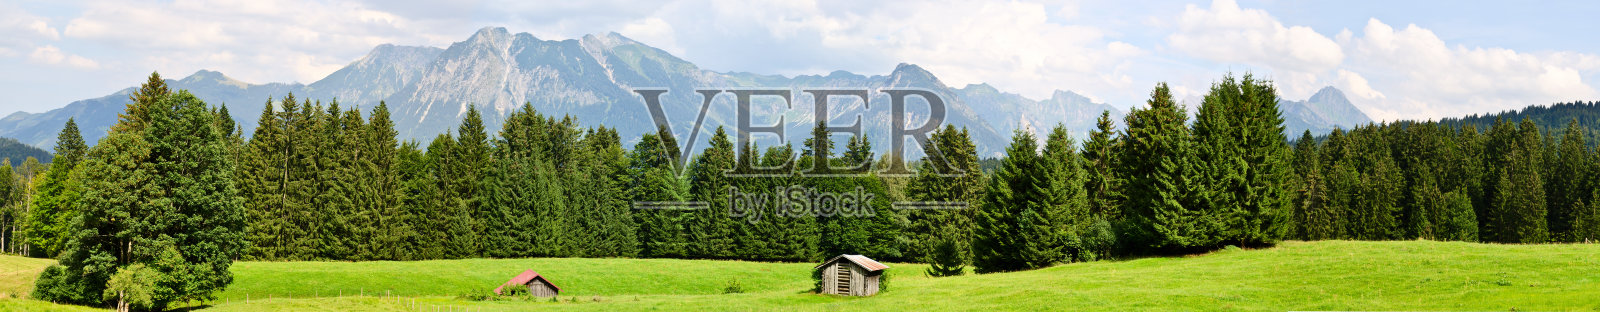 瑞士山脉的全景照片摄影图片